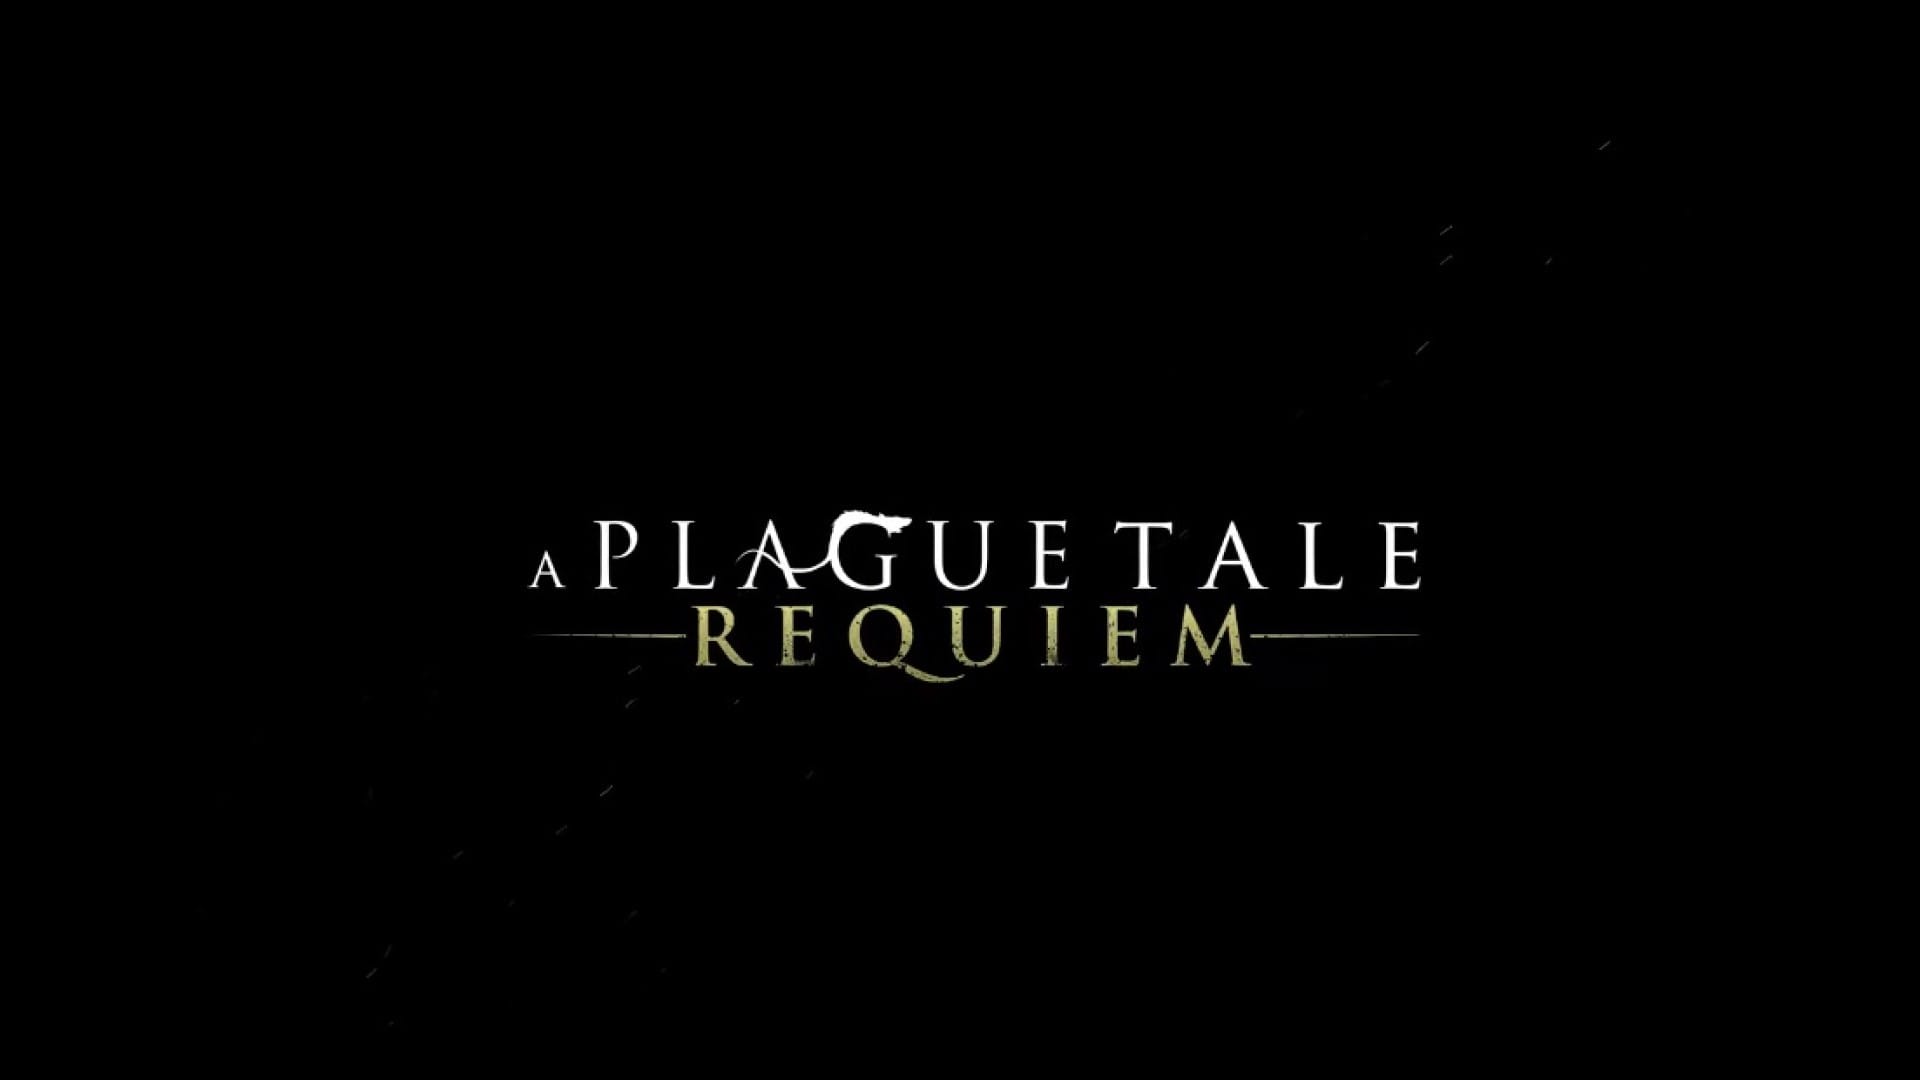 A Plague Tale Requiem Sequel Is Possible If Fans Want It